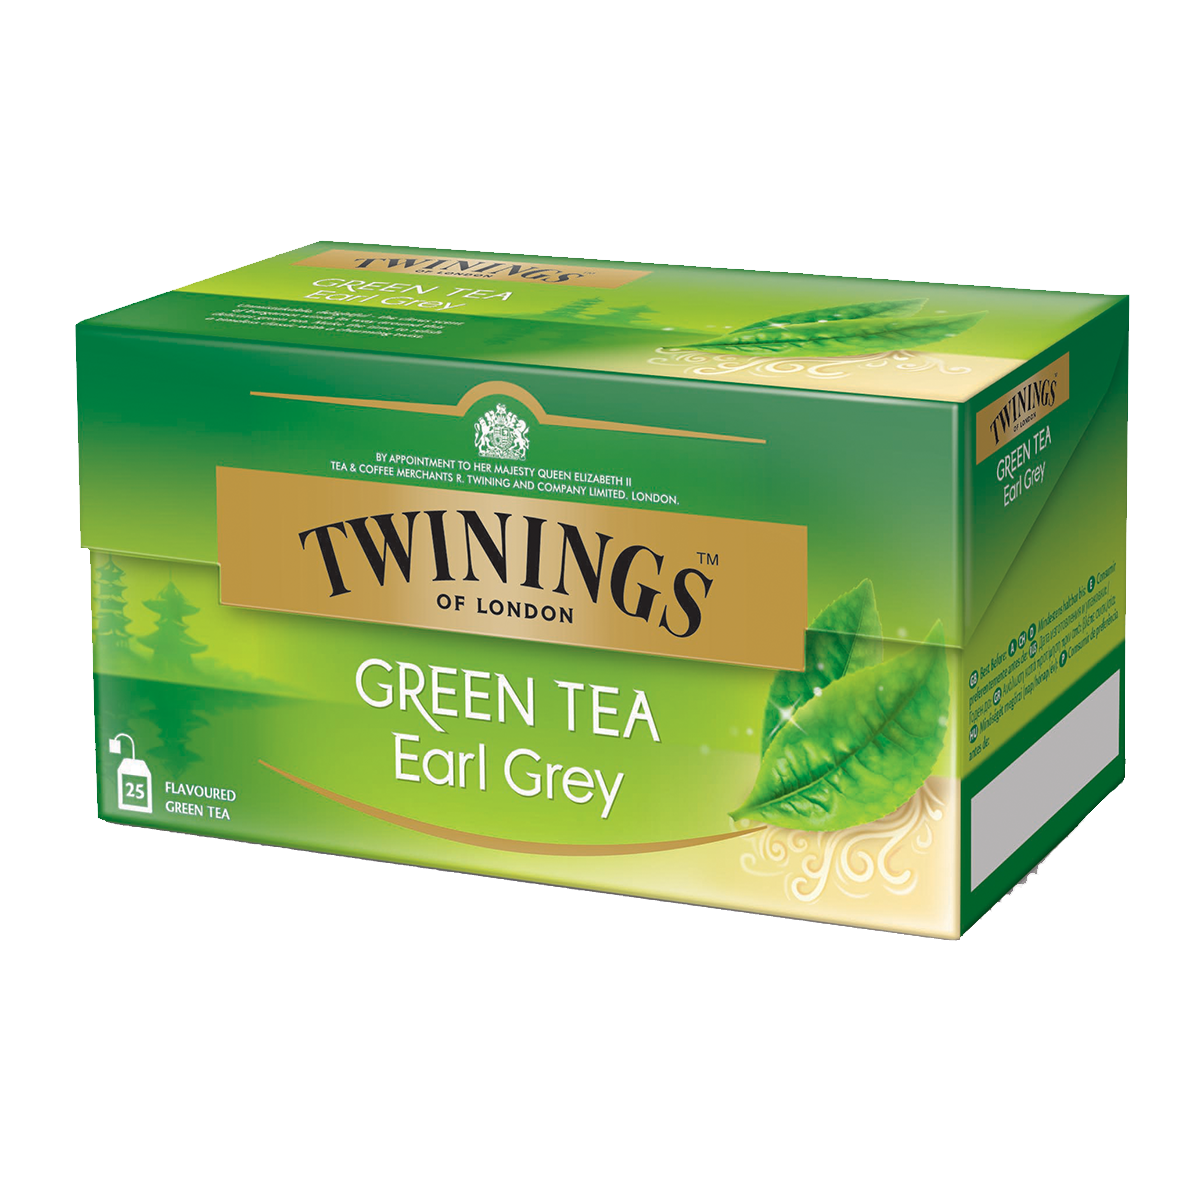  Green Tea Earl Grey: le thé vert rafraîchissant